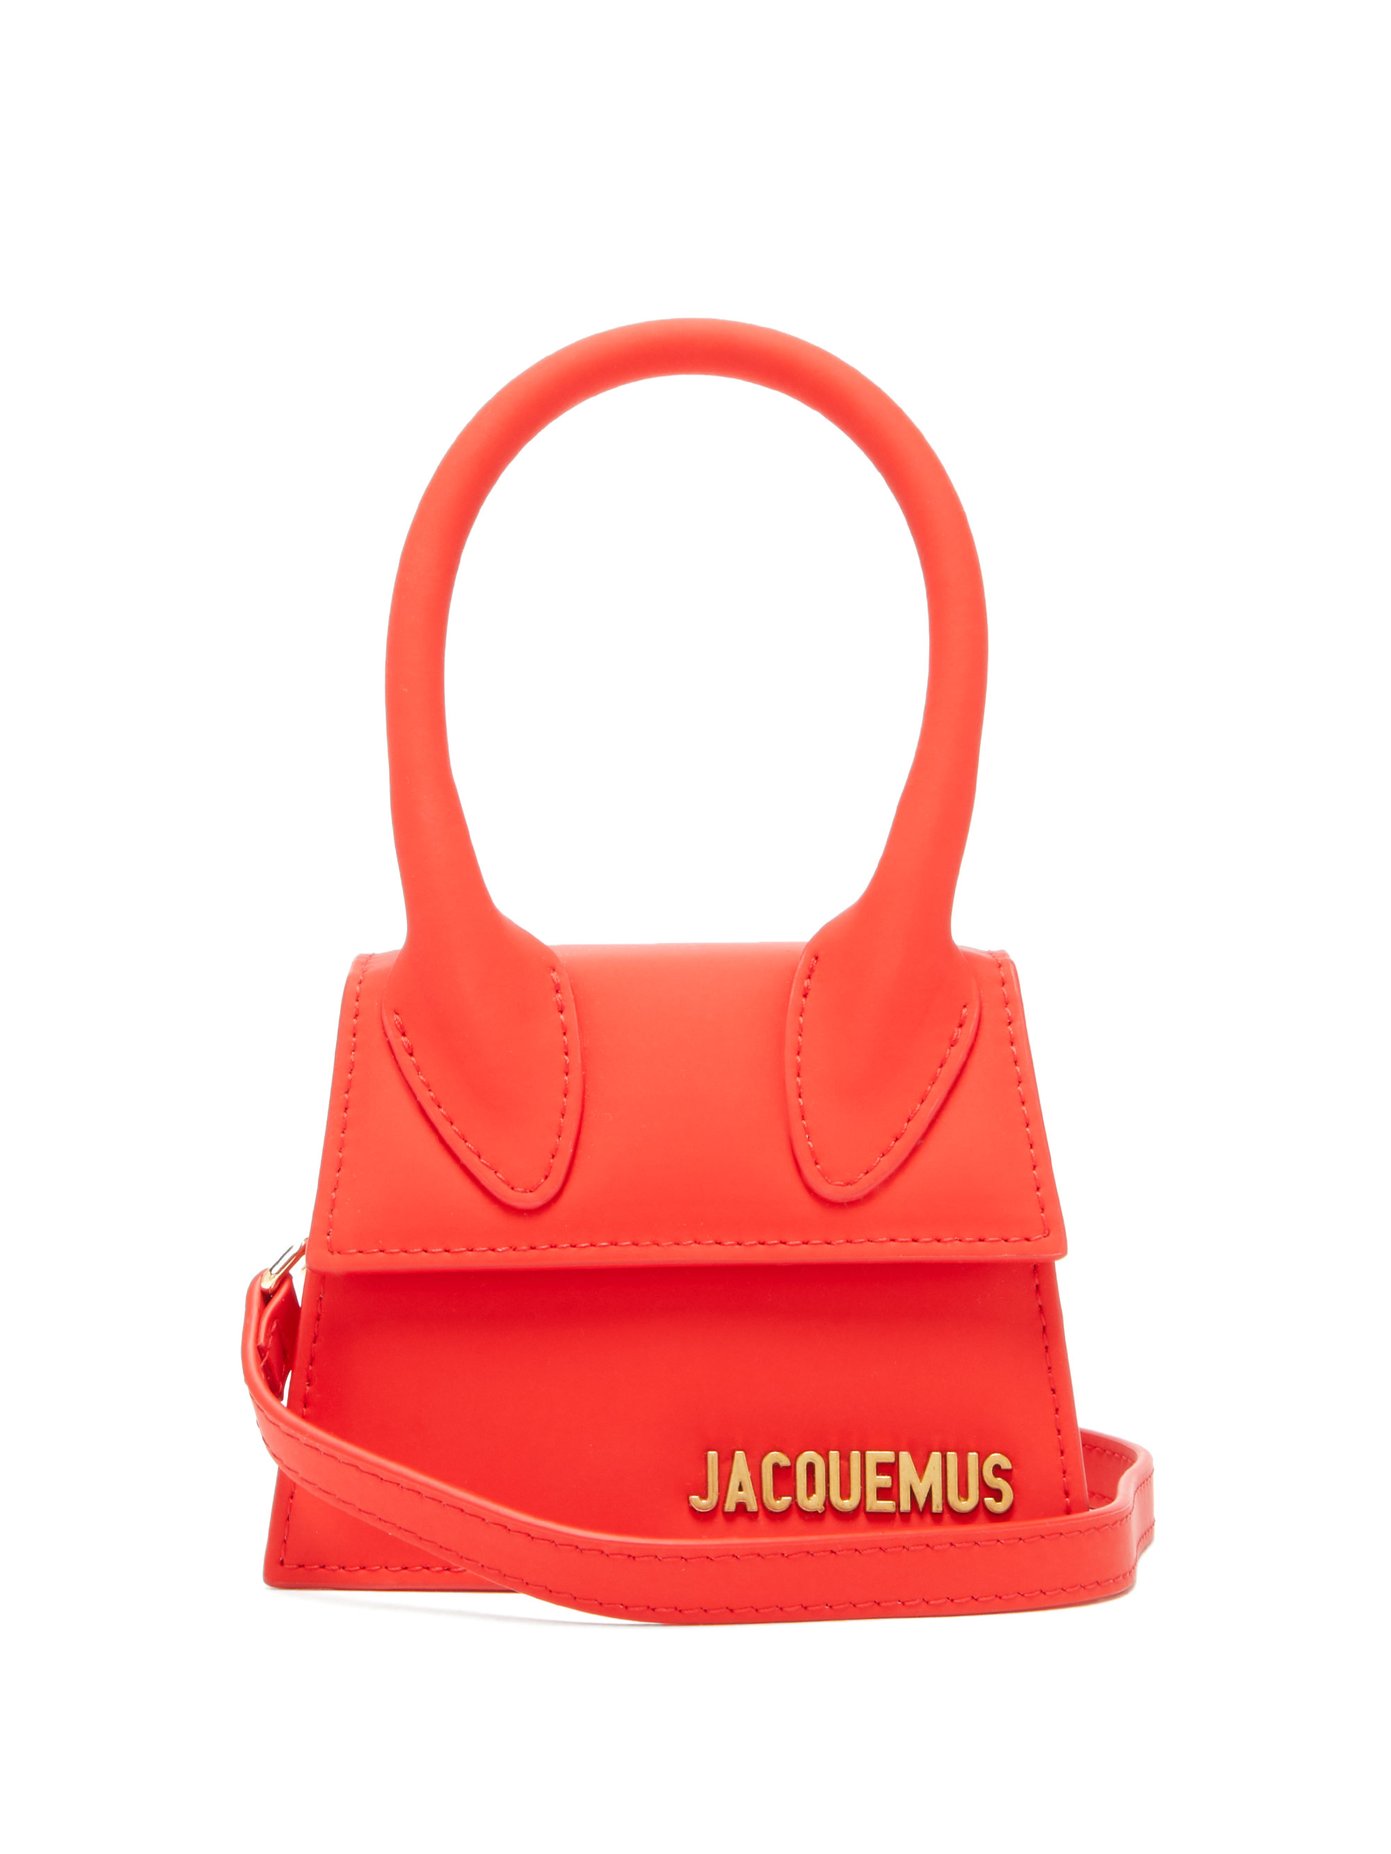 jacquemus crossbody bag